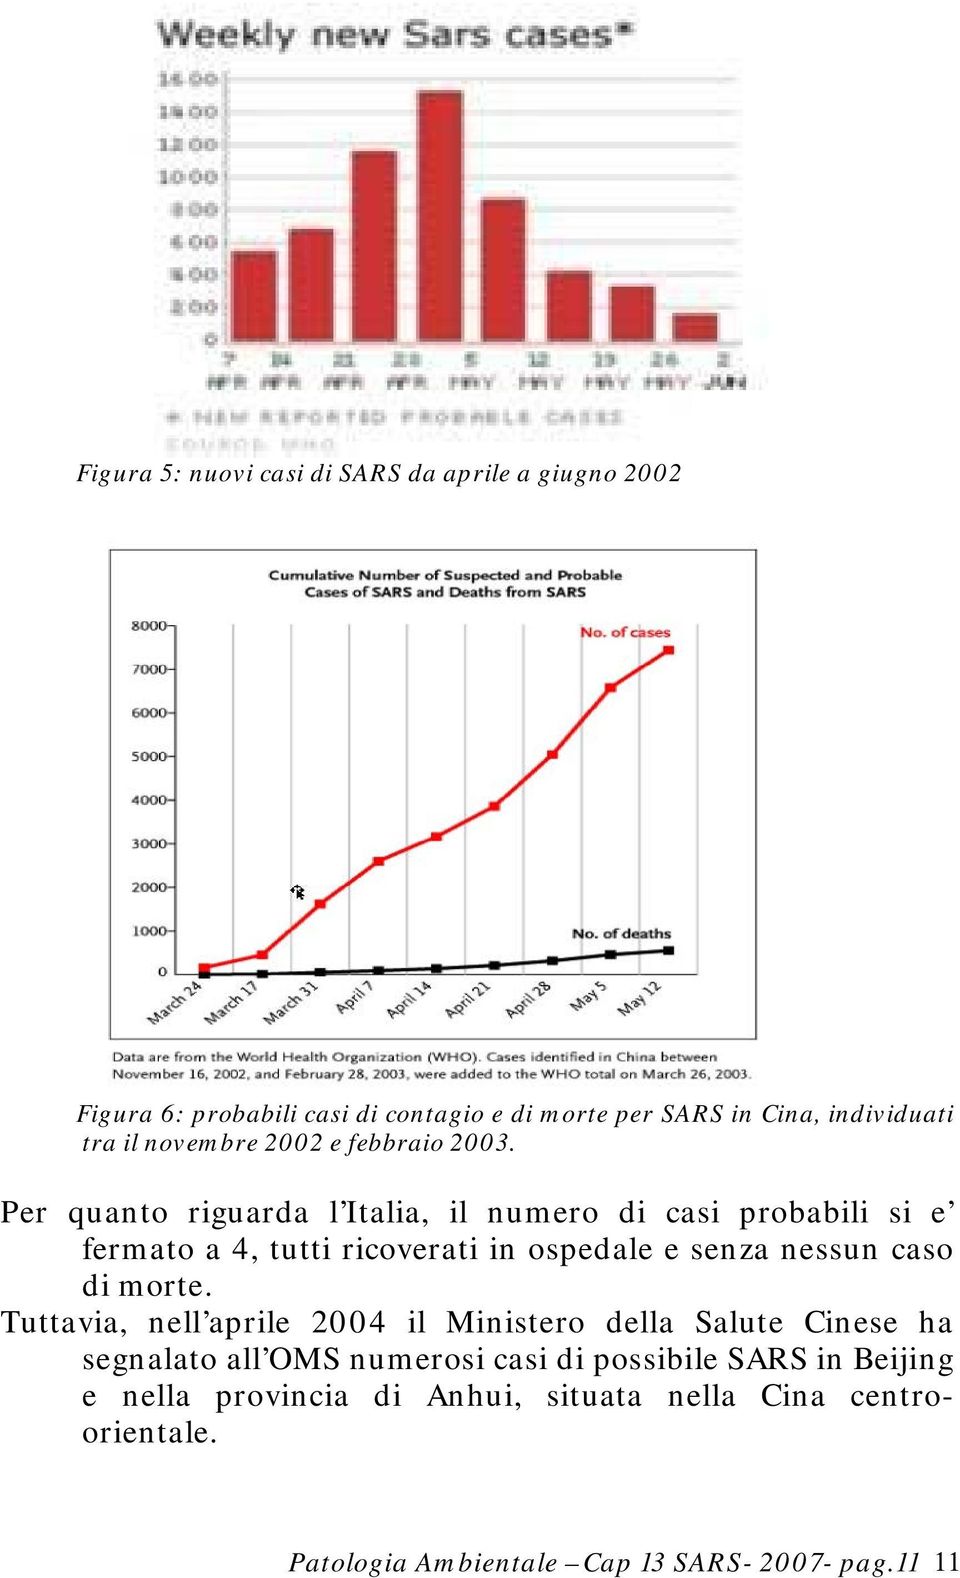 Per quanto riguarda l Italia, il numero di casi probabili si e fermato a 4, tutti ricoverati in ospedale e senza nessun caso di morte.